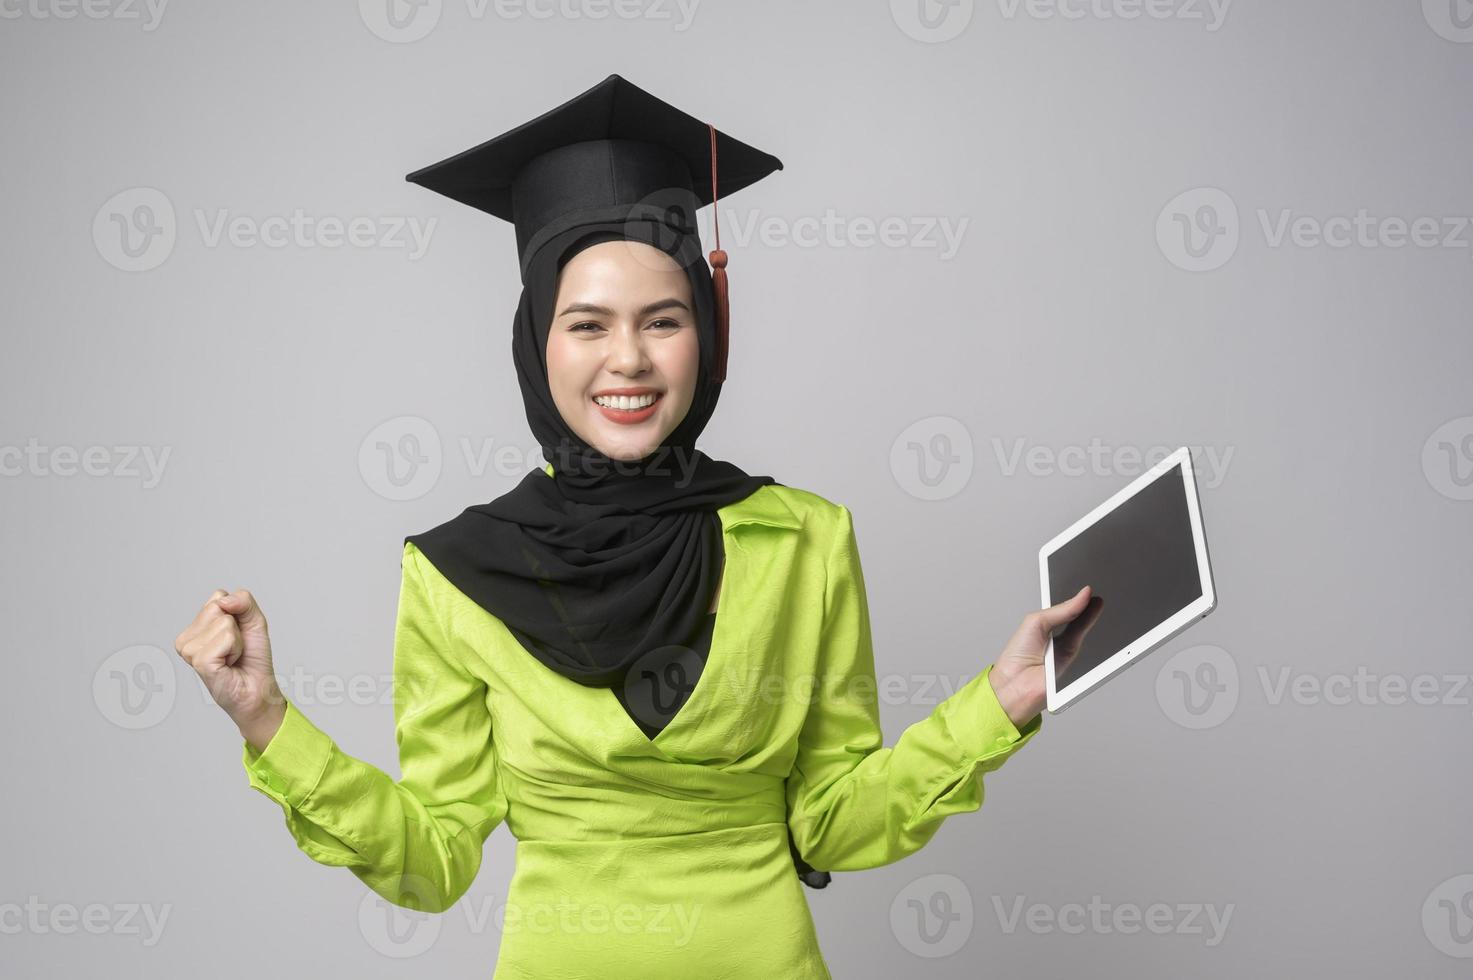 giovane sorridente musulmano donna con hijab indossare la laurea cappello, formazione scolastica e Università concetto foto